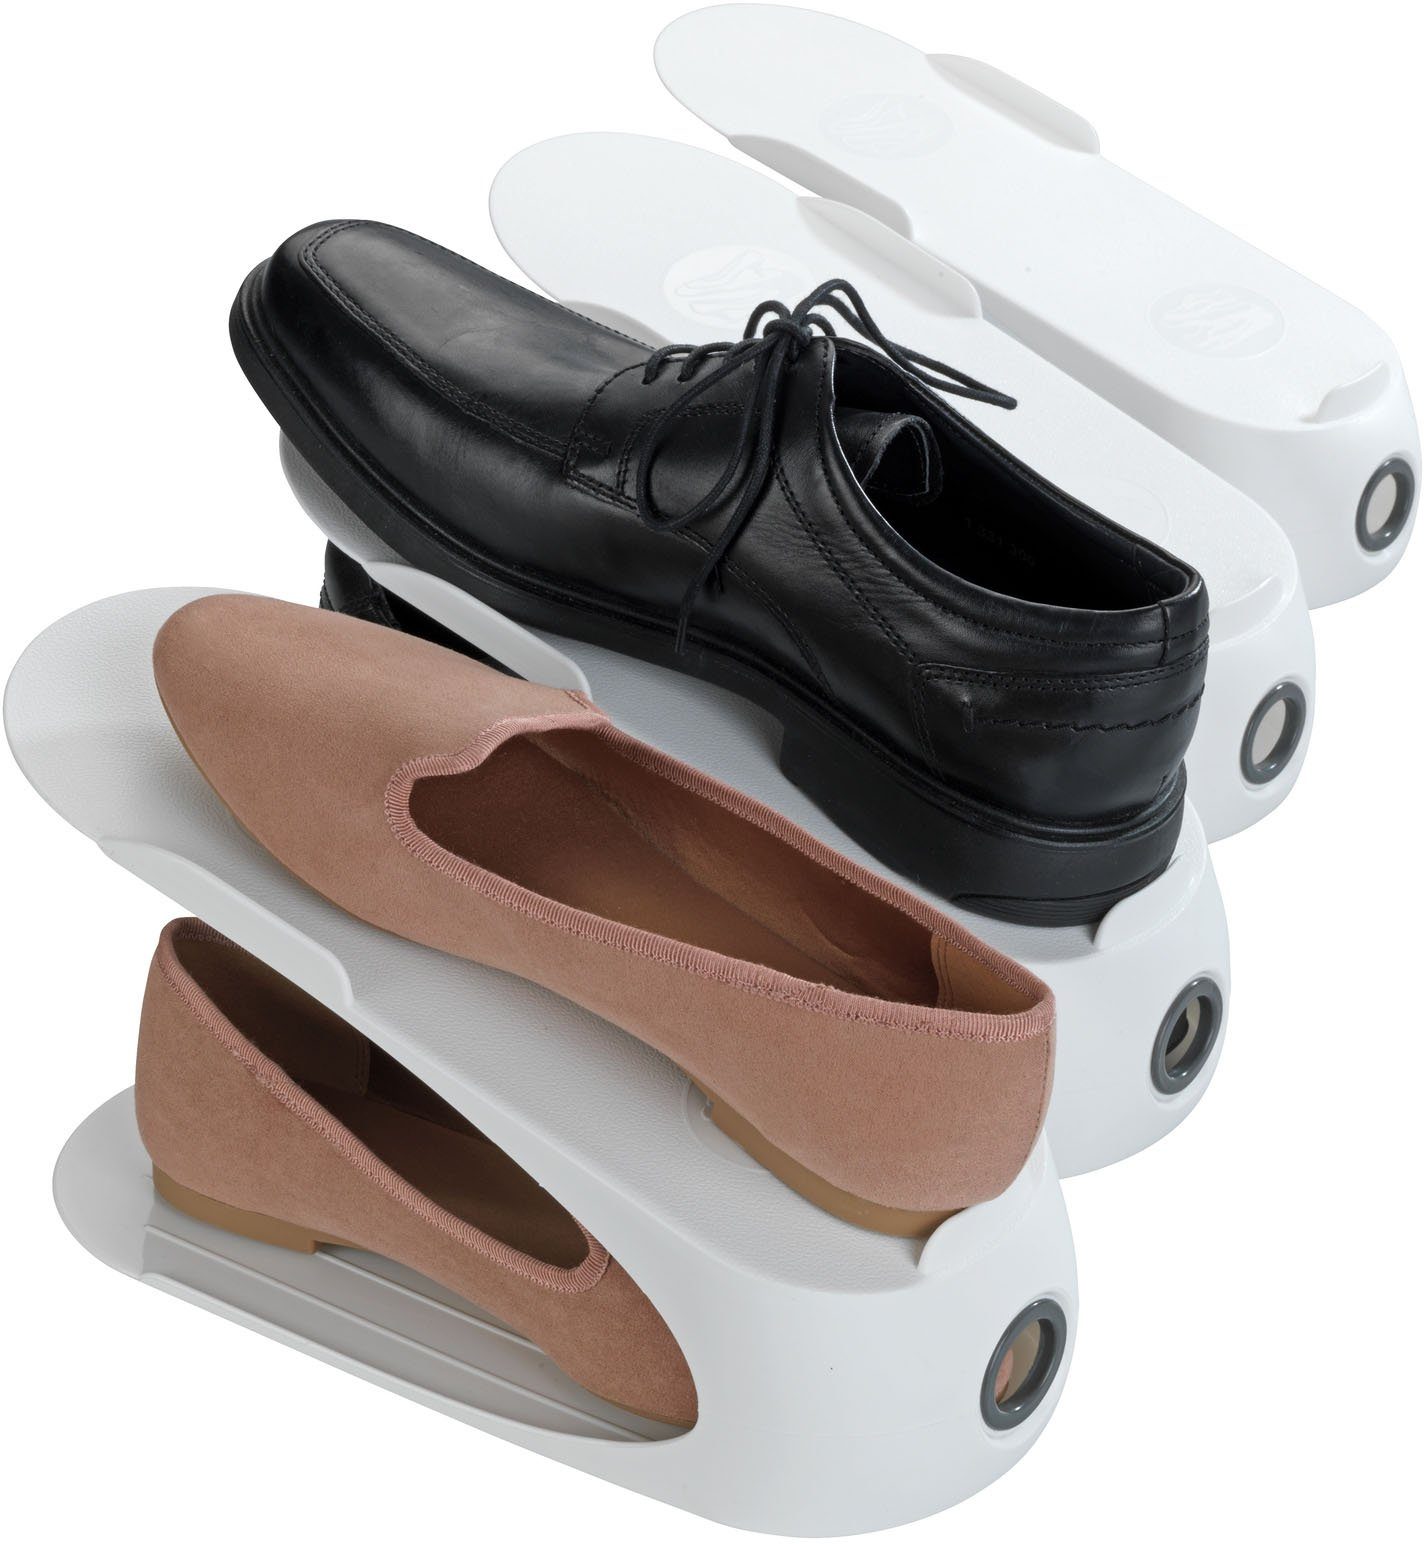 WENKO Schuhstapler, 50 % mehr Platz im Schuhschrank, Kunststoff, 4-teilig weiß | Schuhregale